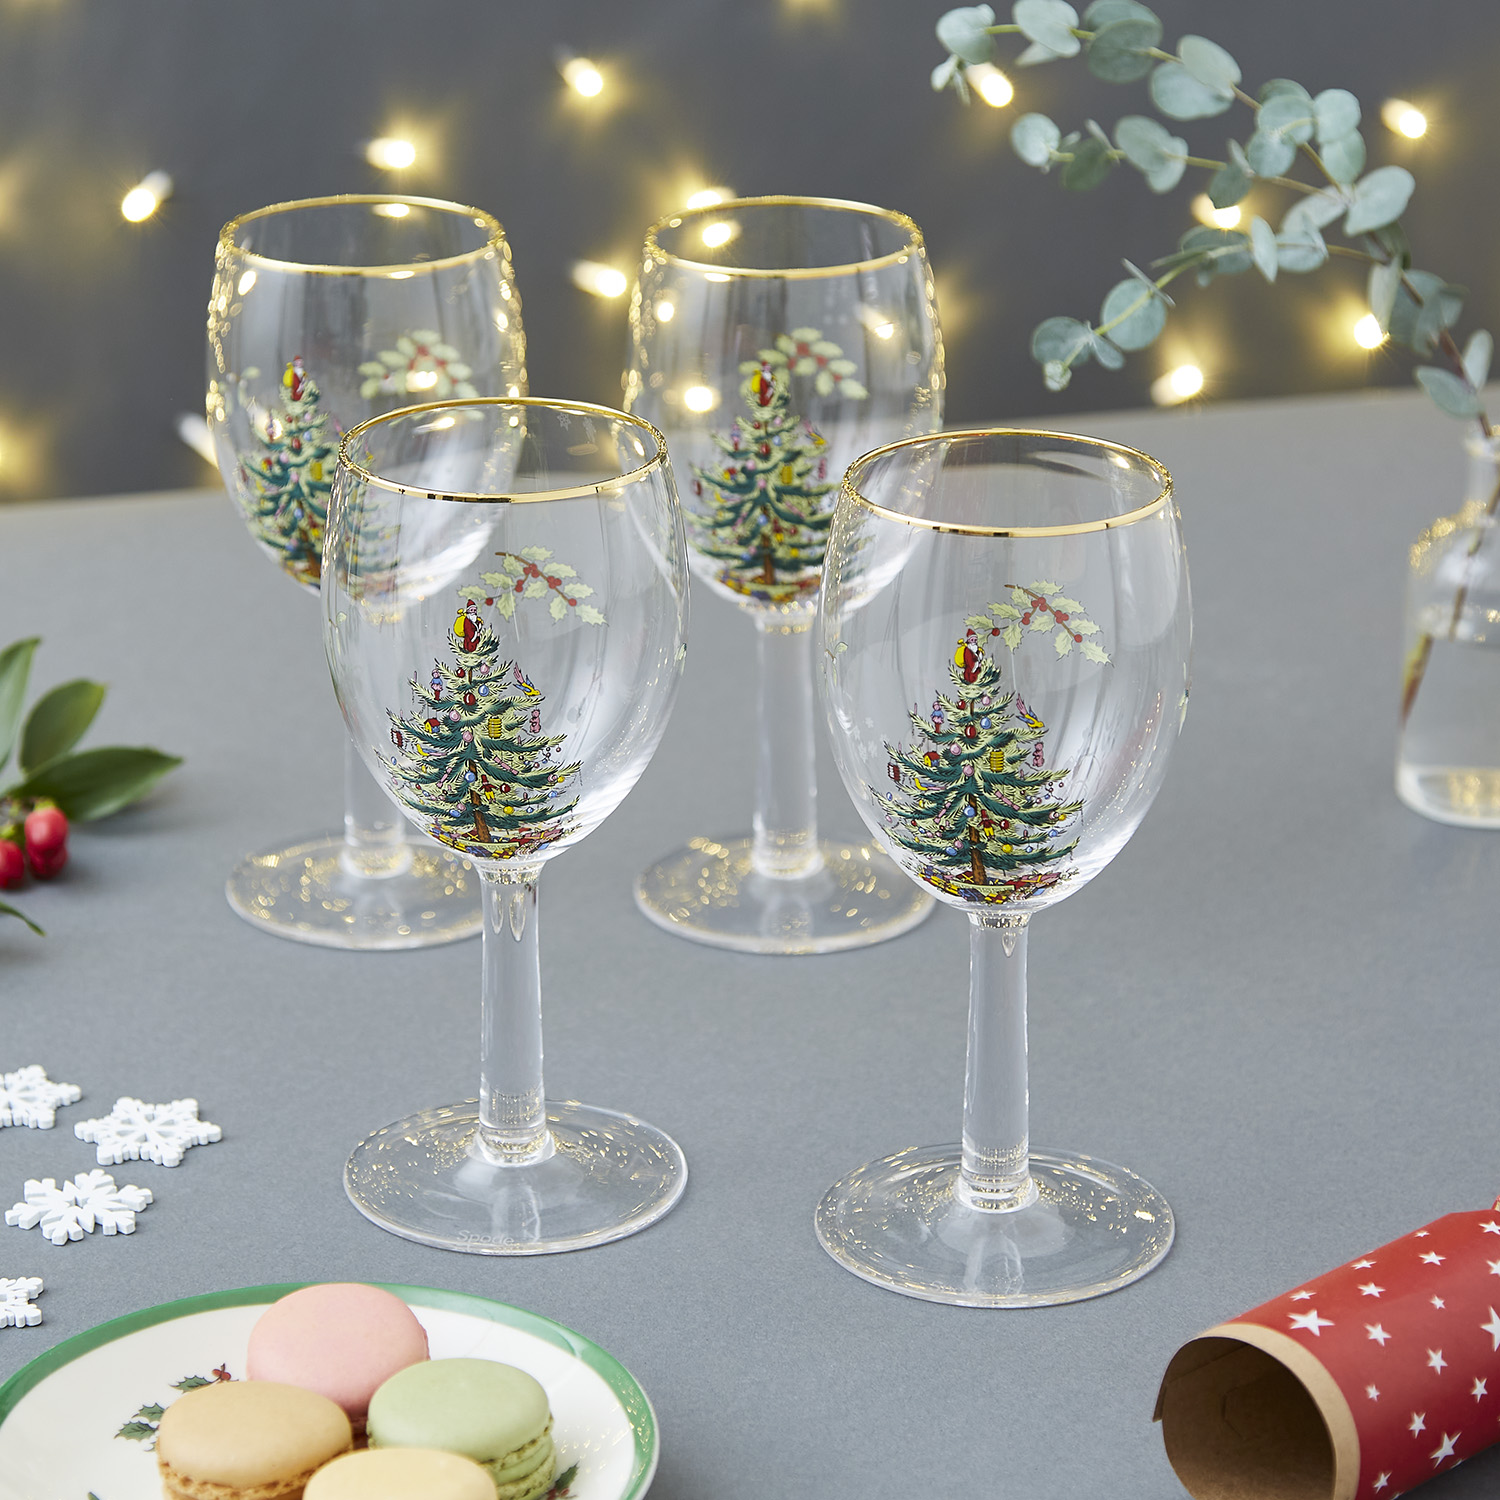 Joyeux Noel Christmas Wine Glasses Set of 8